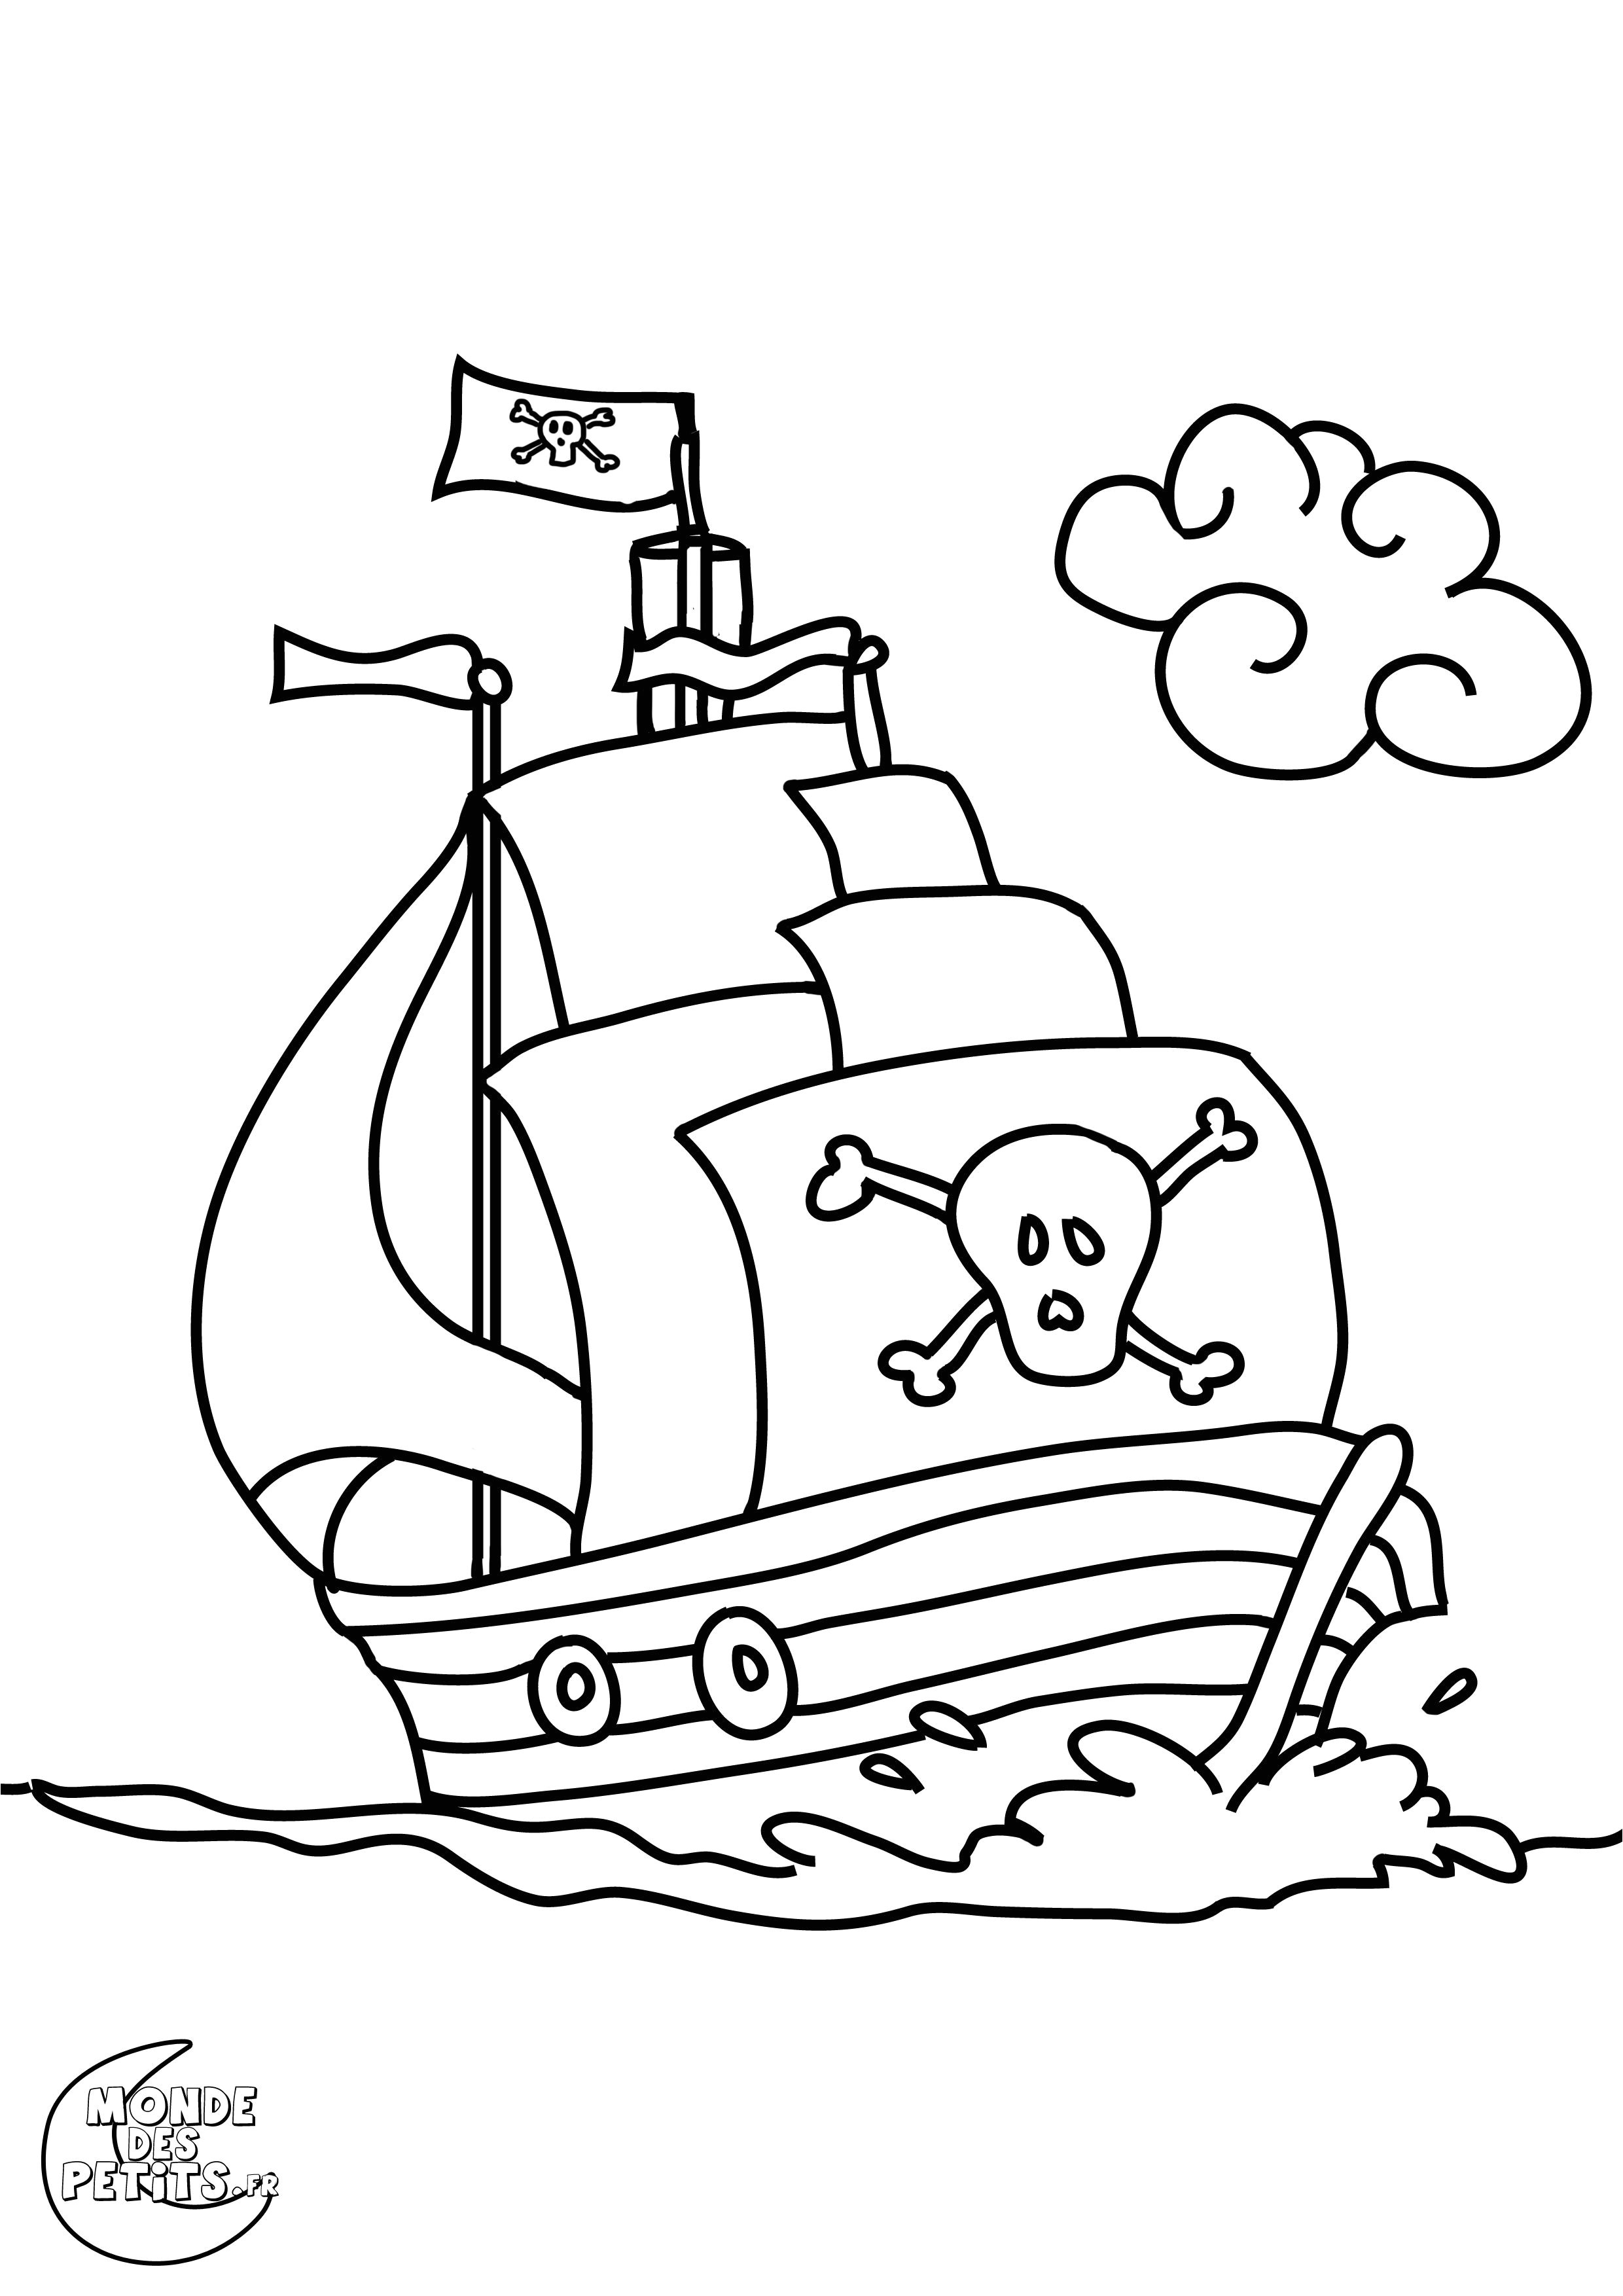 Coloriage Sur La Mer à Imprimer Coloriage Pirate   Colorier Dessin   Imprimer